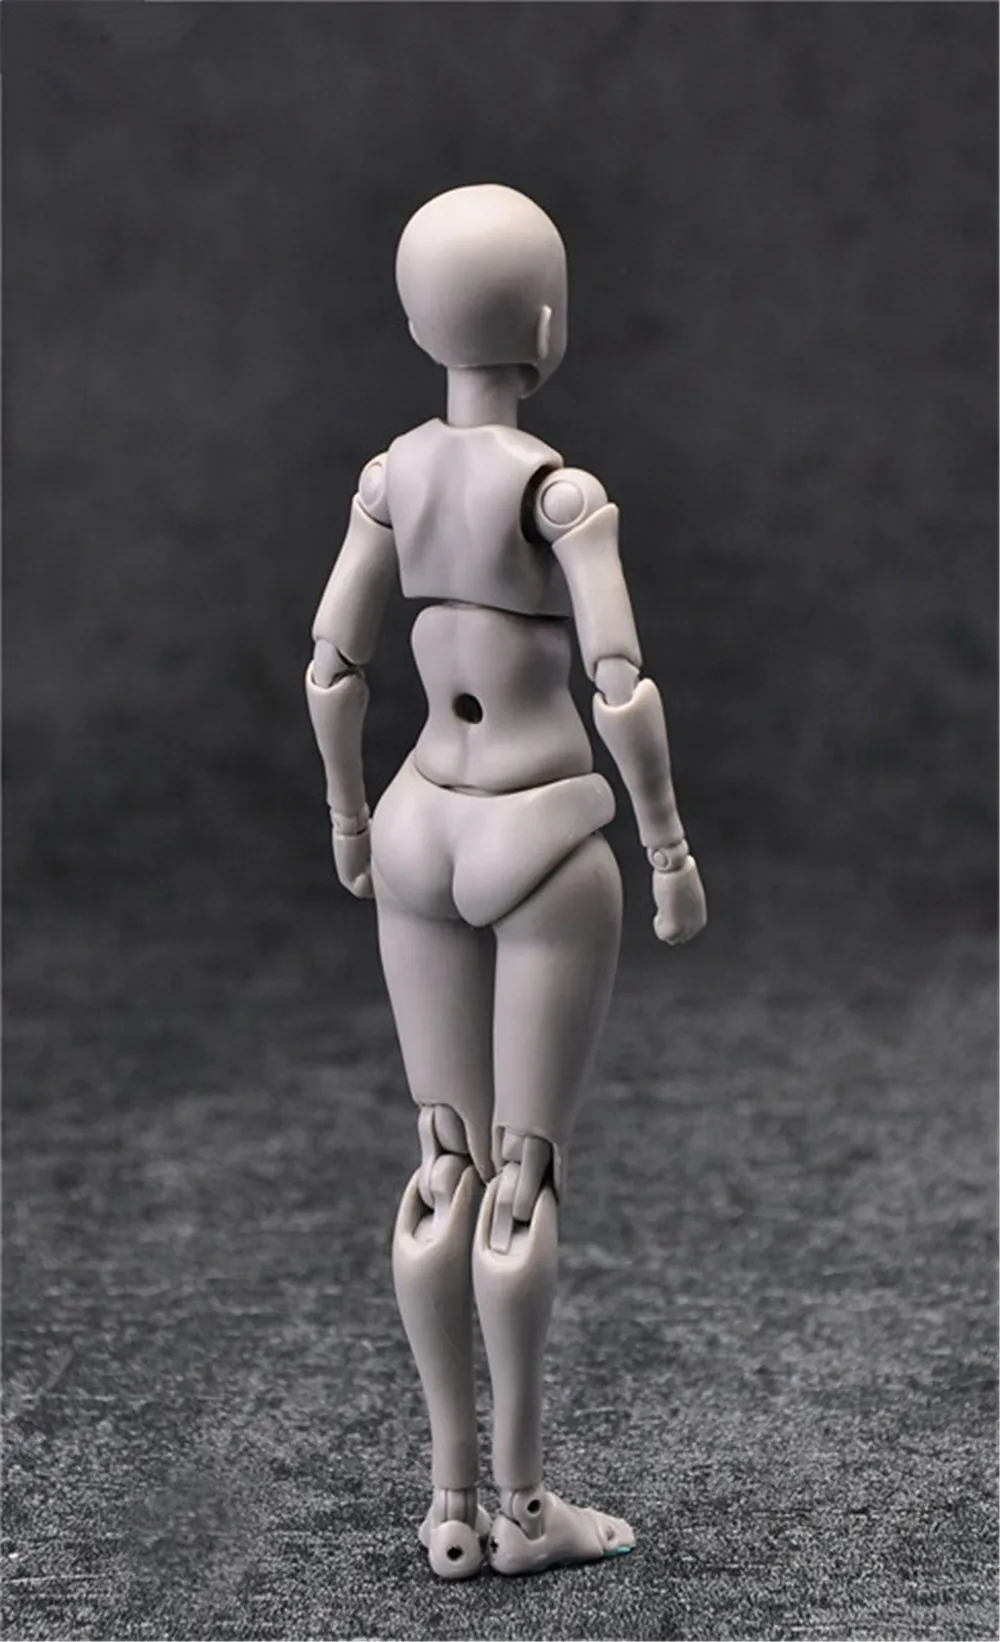 14 см Женская и мужская фигурка игрушки Аниме Кукла подвижное тело шарнир манекен bjd художественная Живопись Рисунок тело модель куклы